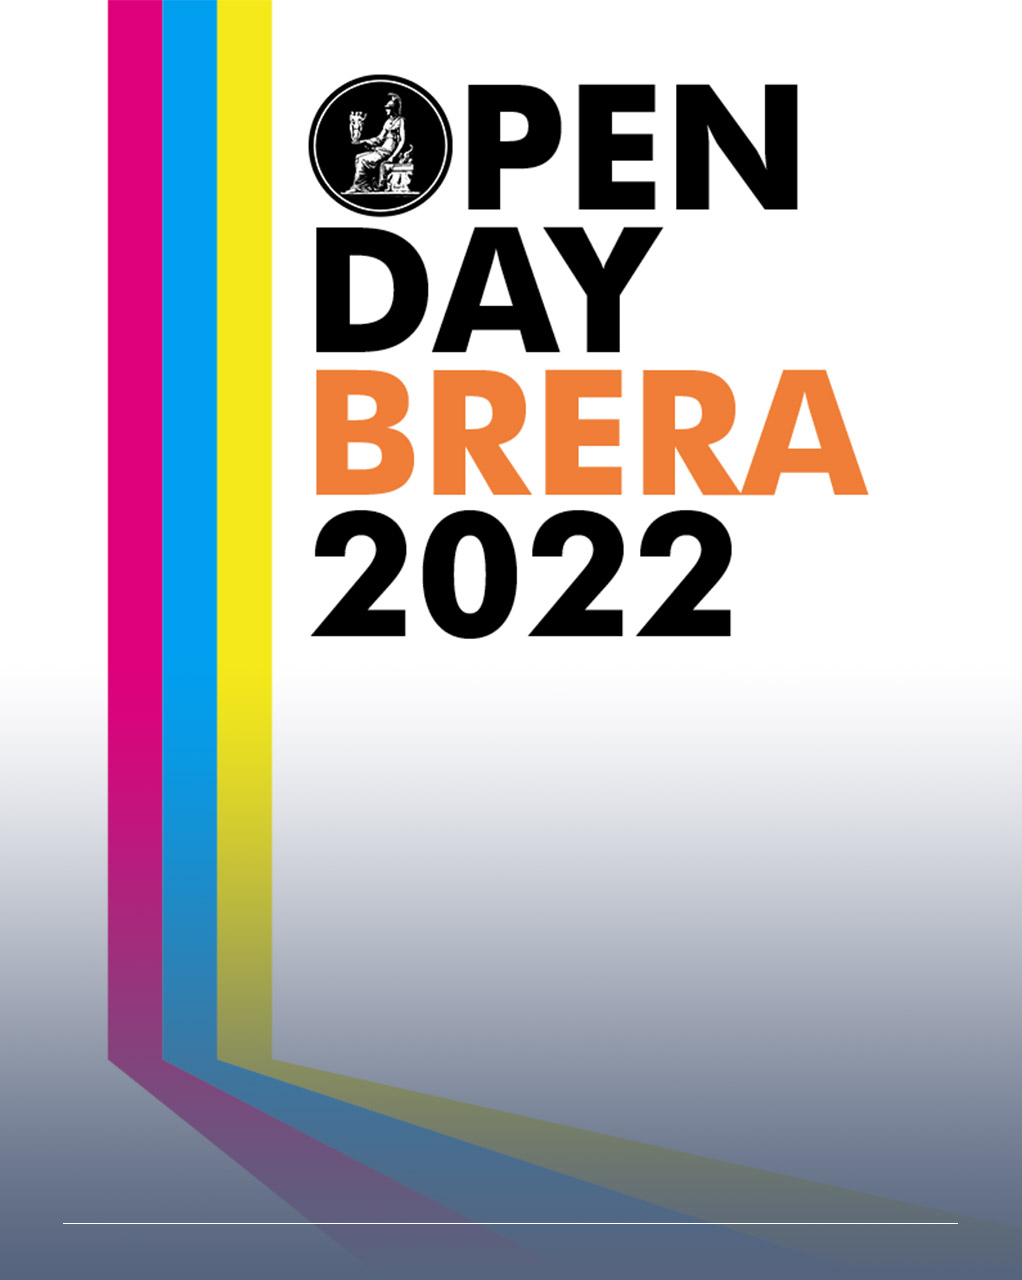 immagine con scritta Open day Brera 2022 e fasce colorate